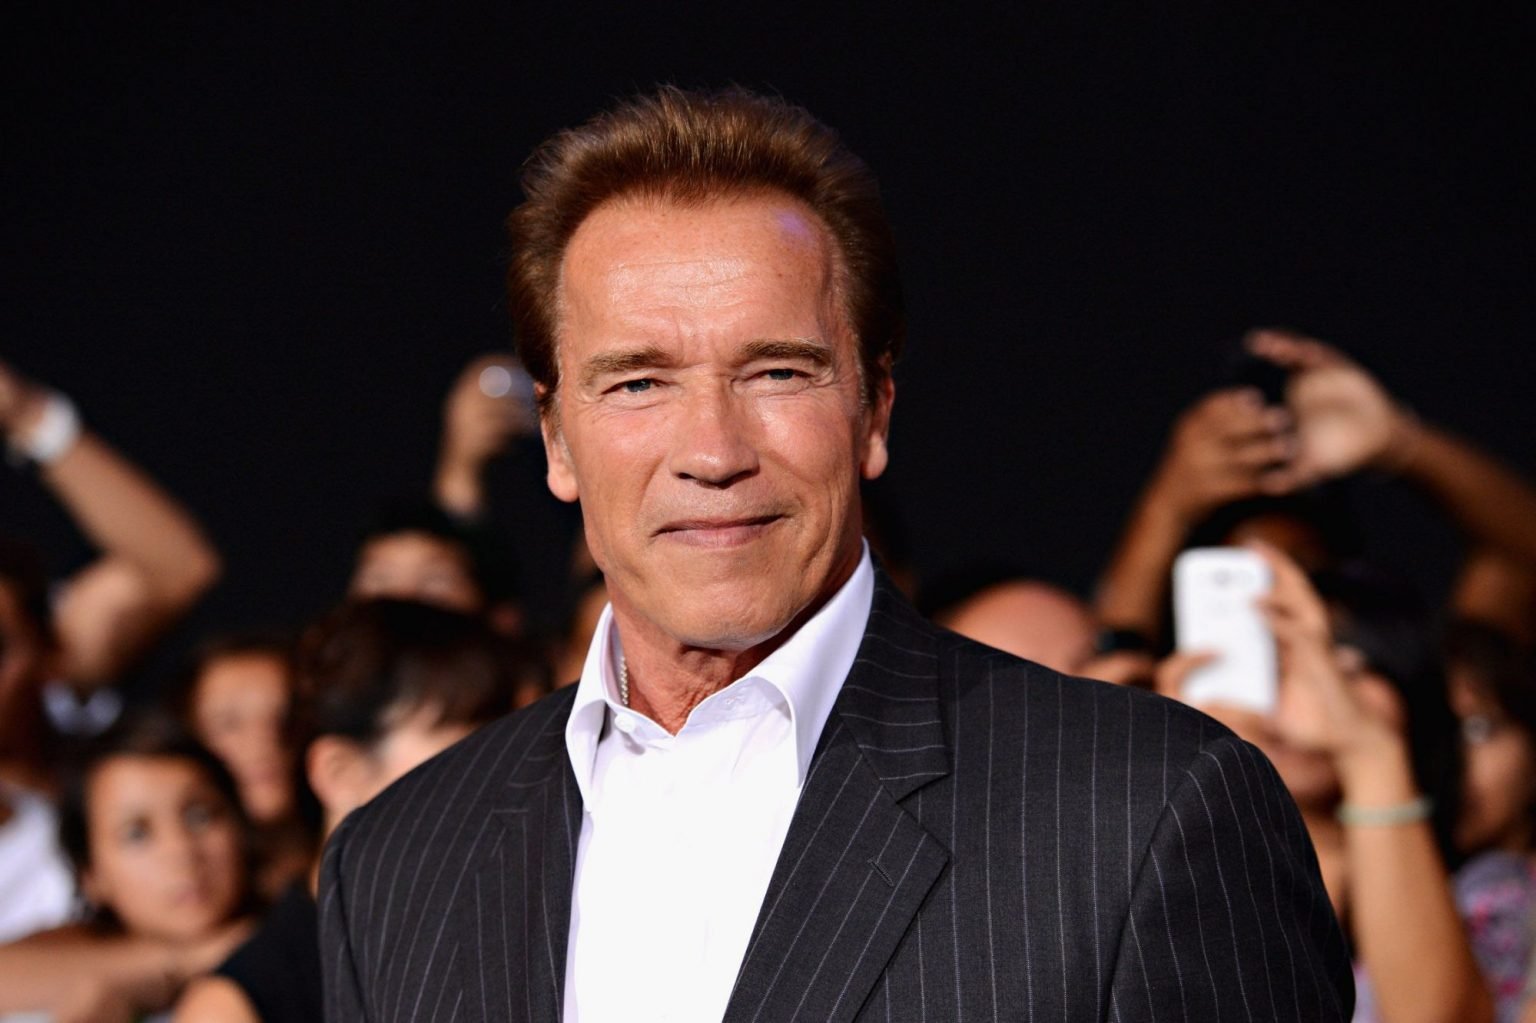 Governor of California, Arnold Schwarzenegger